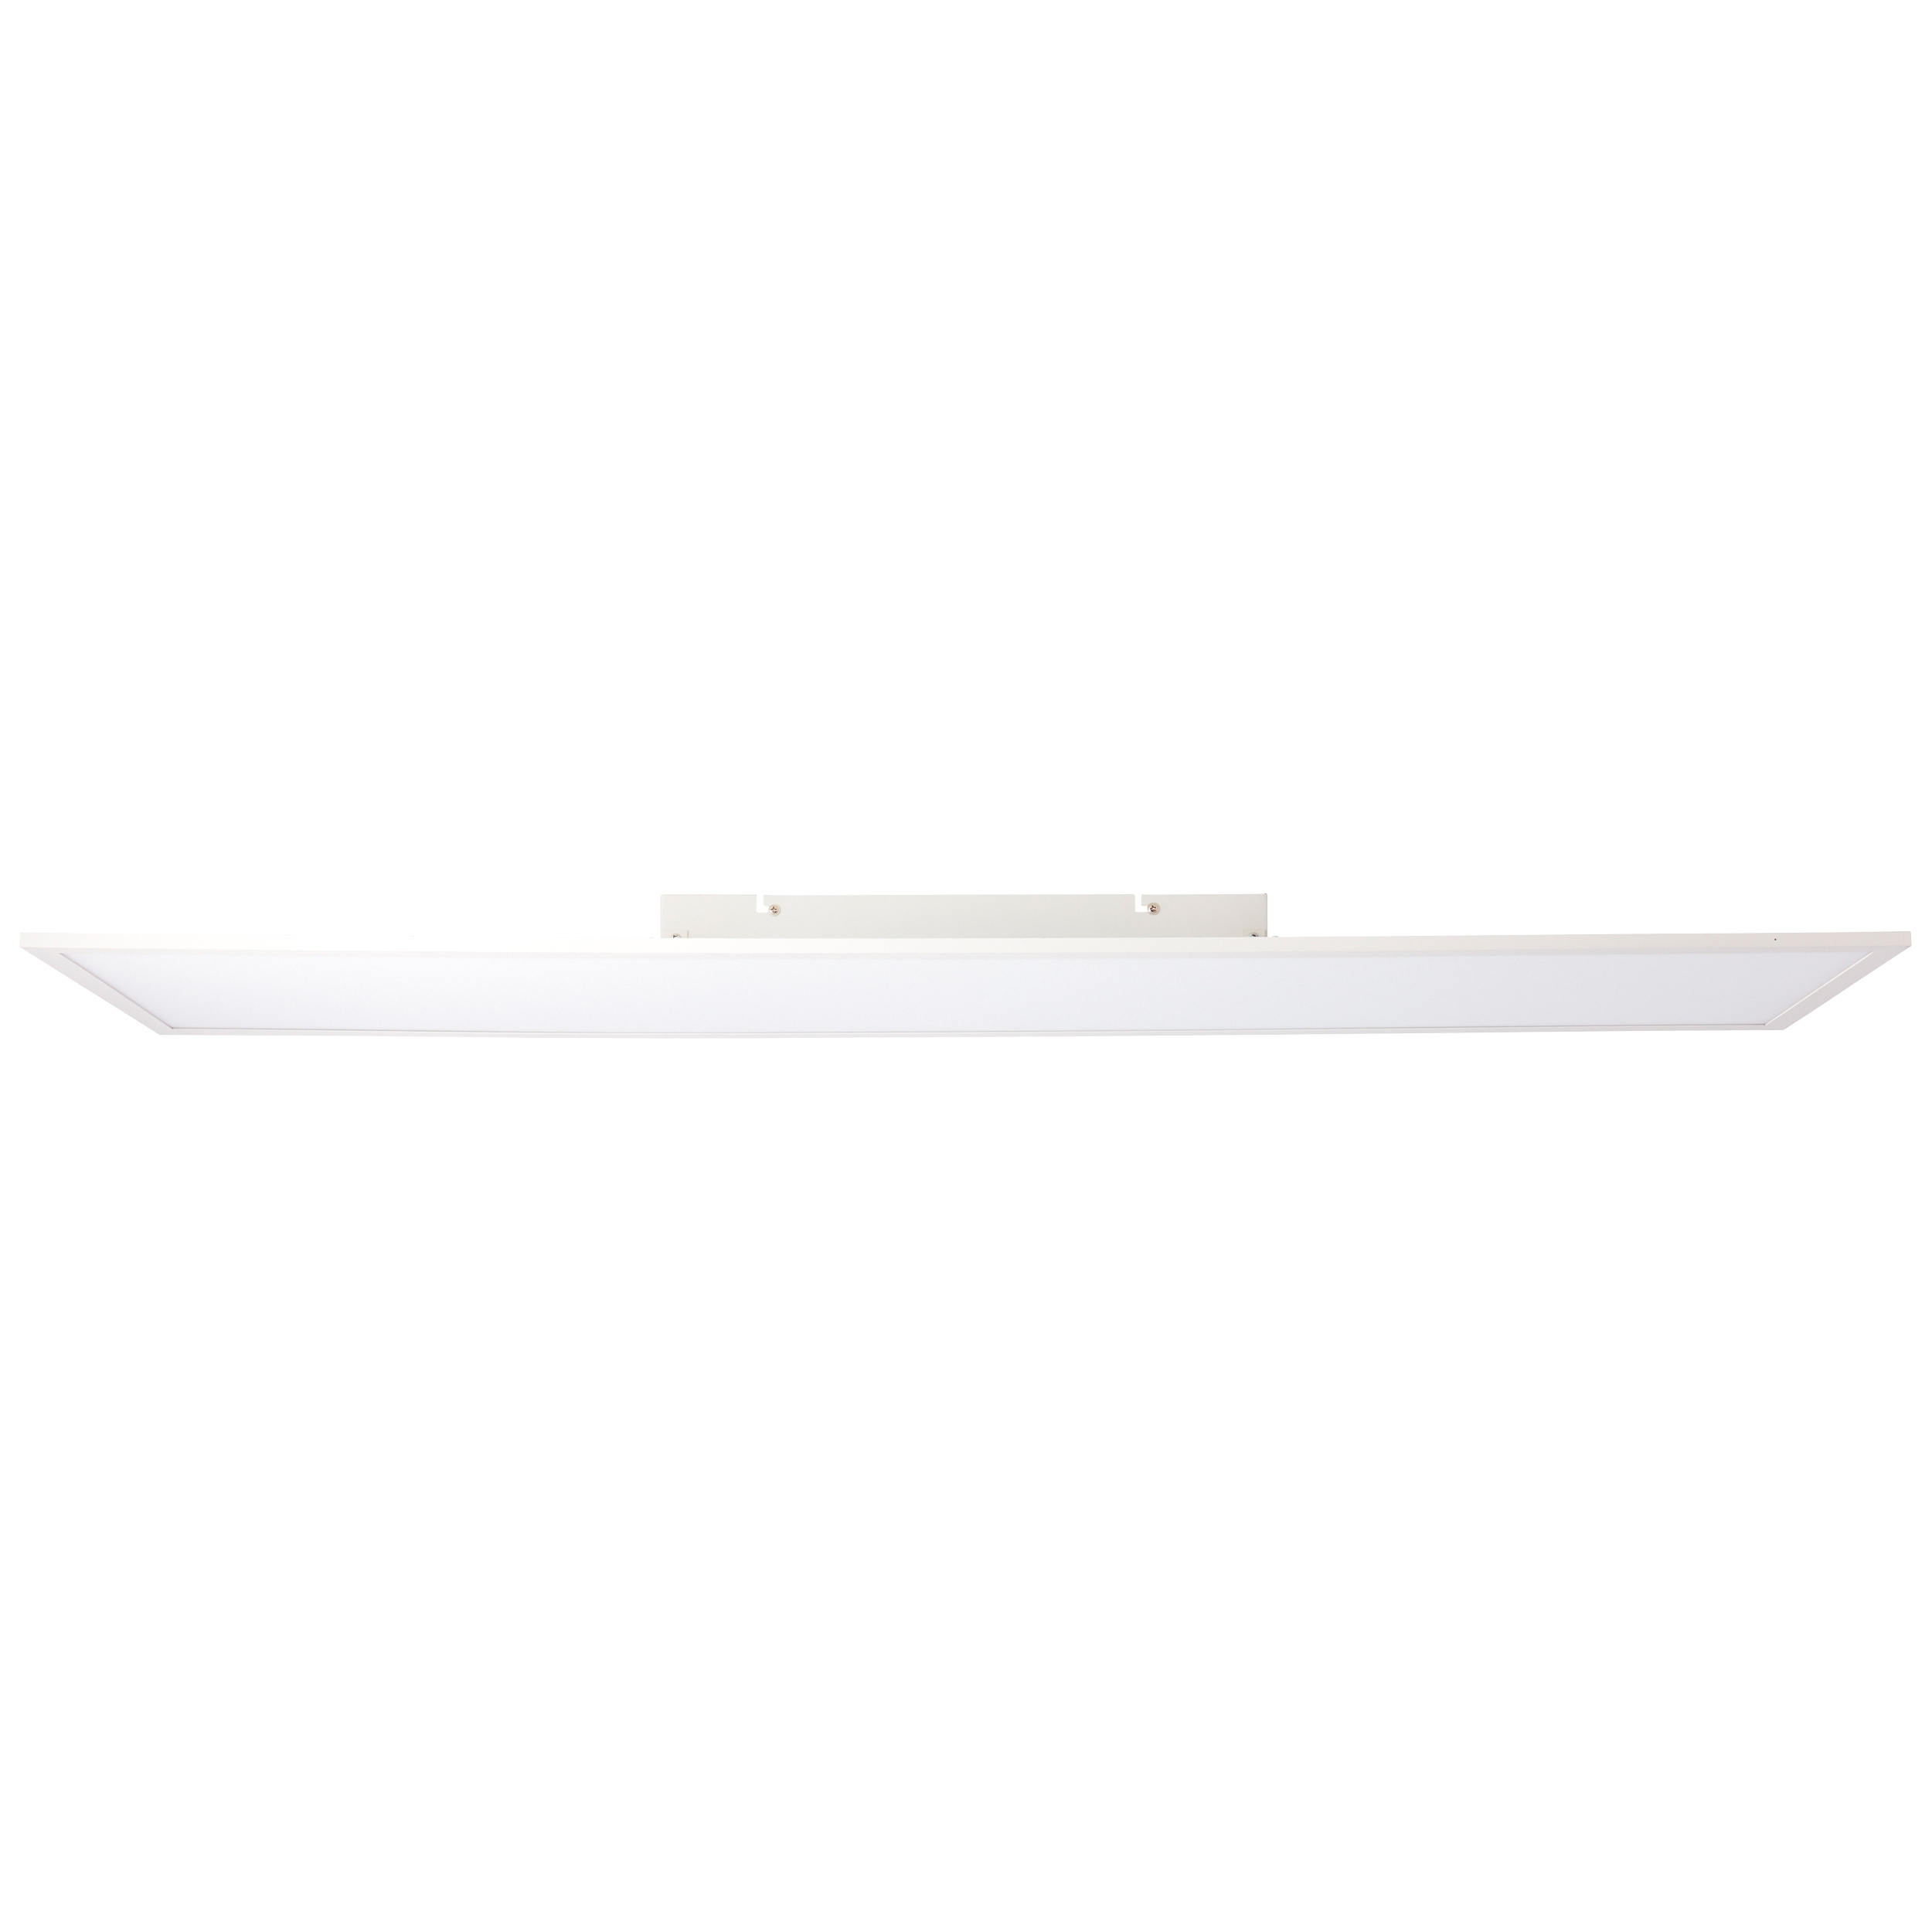 Buffi LED Deckenaufbau-Paneel 120x30cm weiß G90359A05 